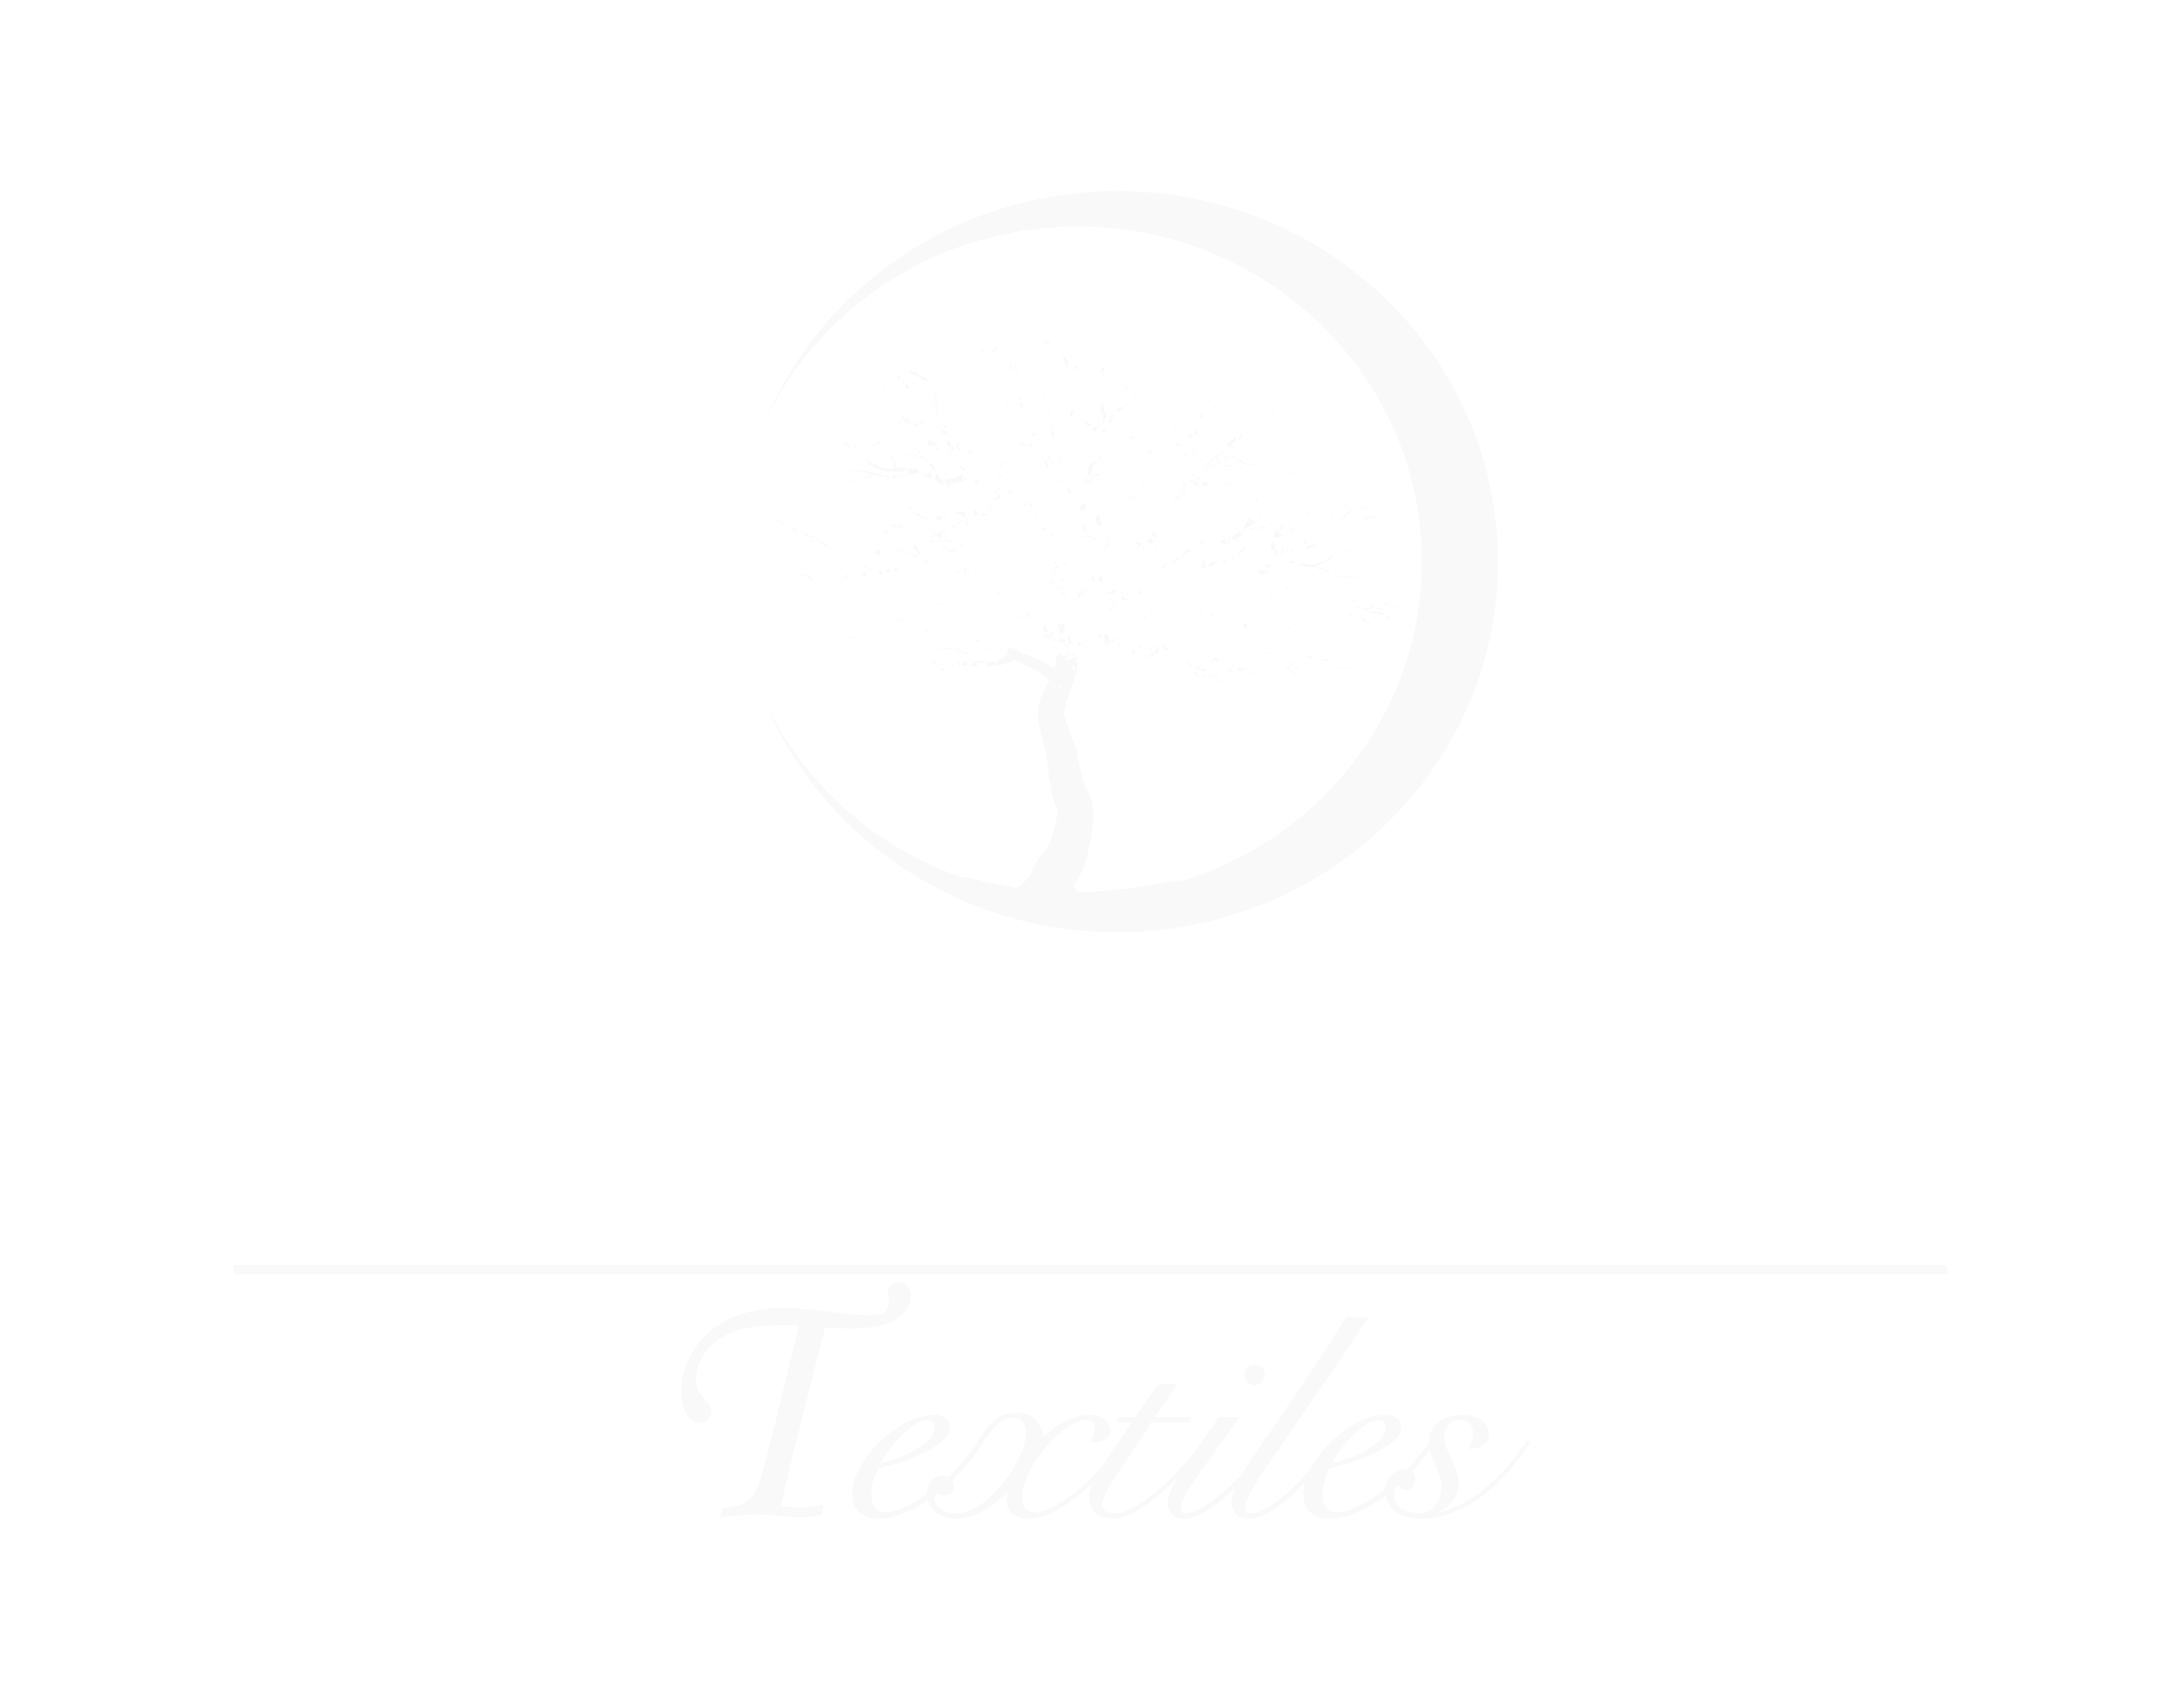 Jacaranda Textiles